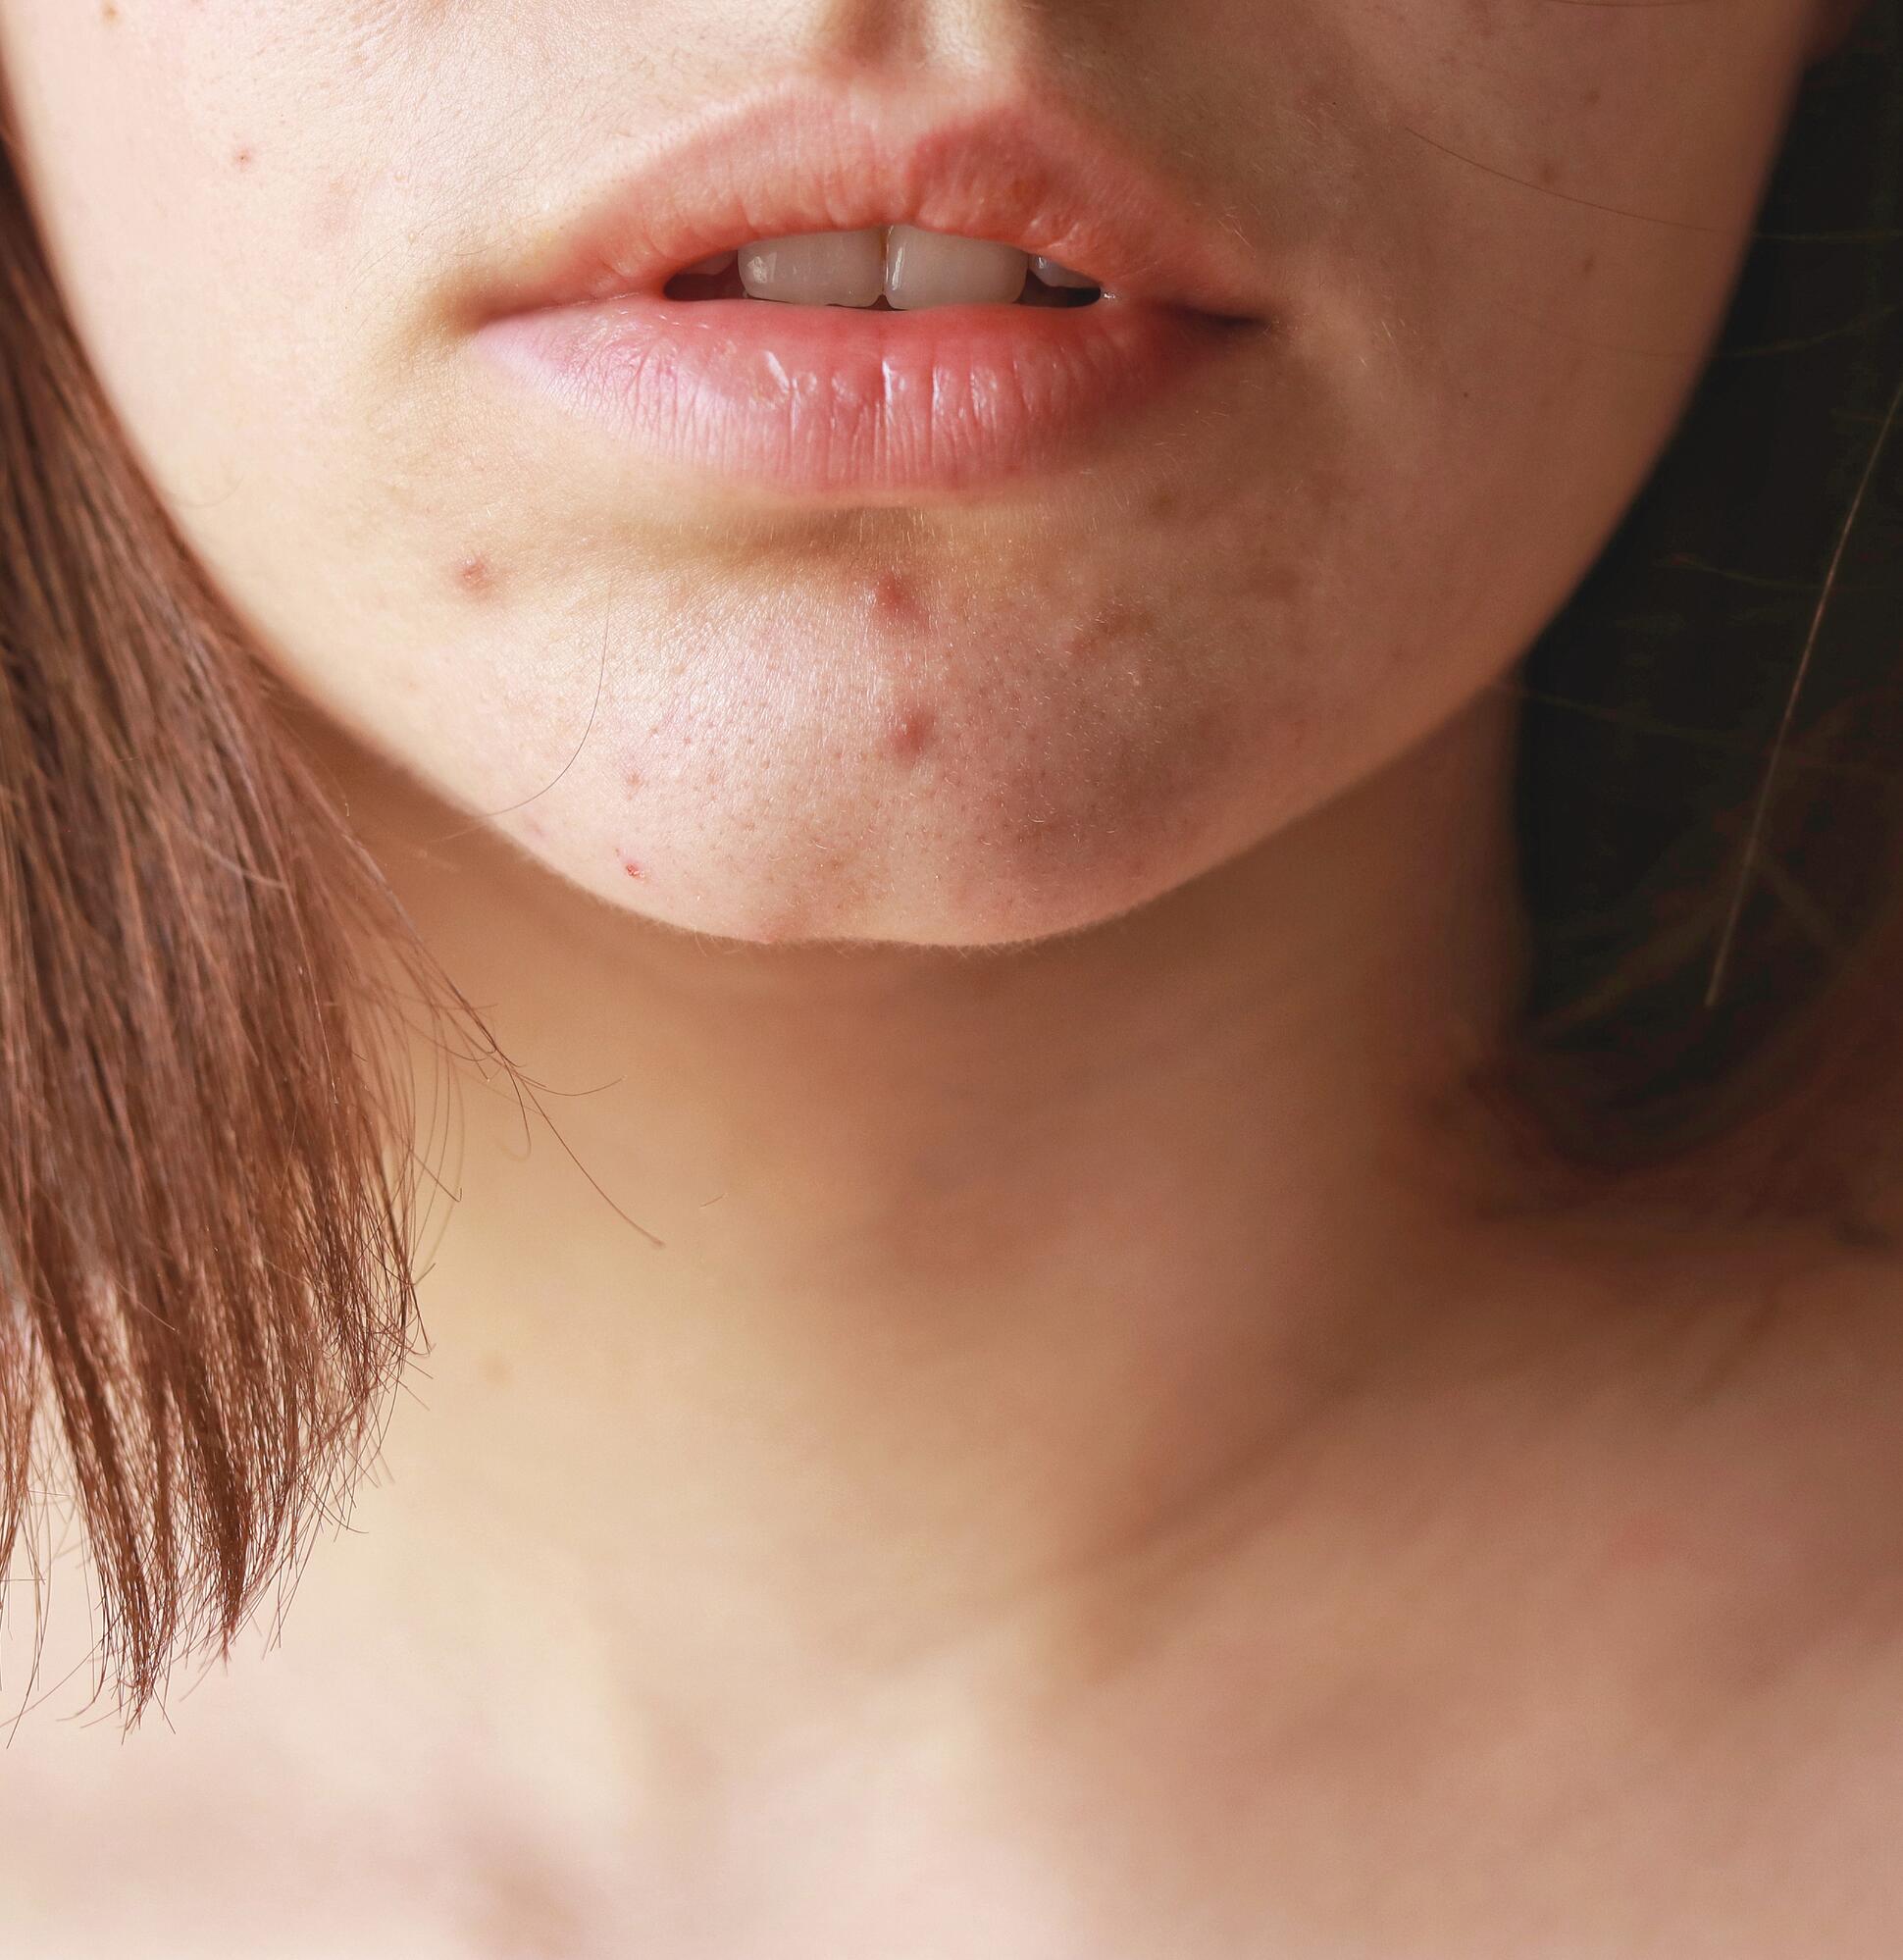 Impactul psihologic al acneei asupra adulților